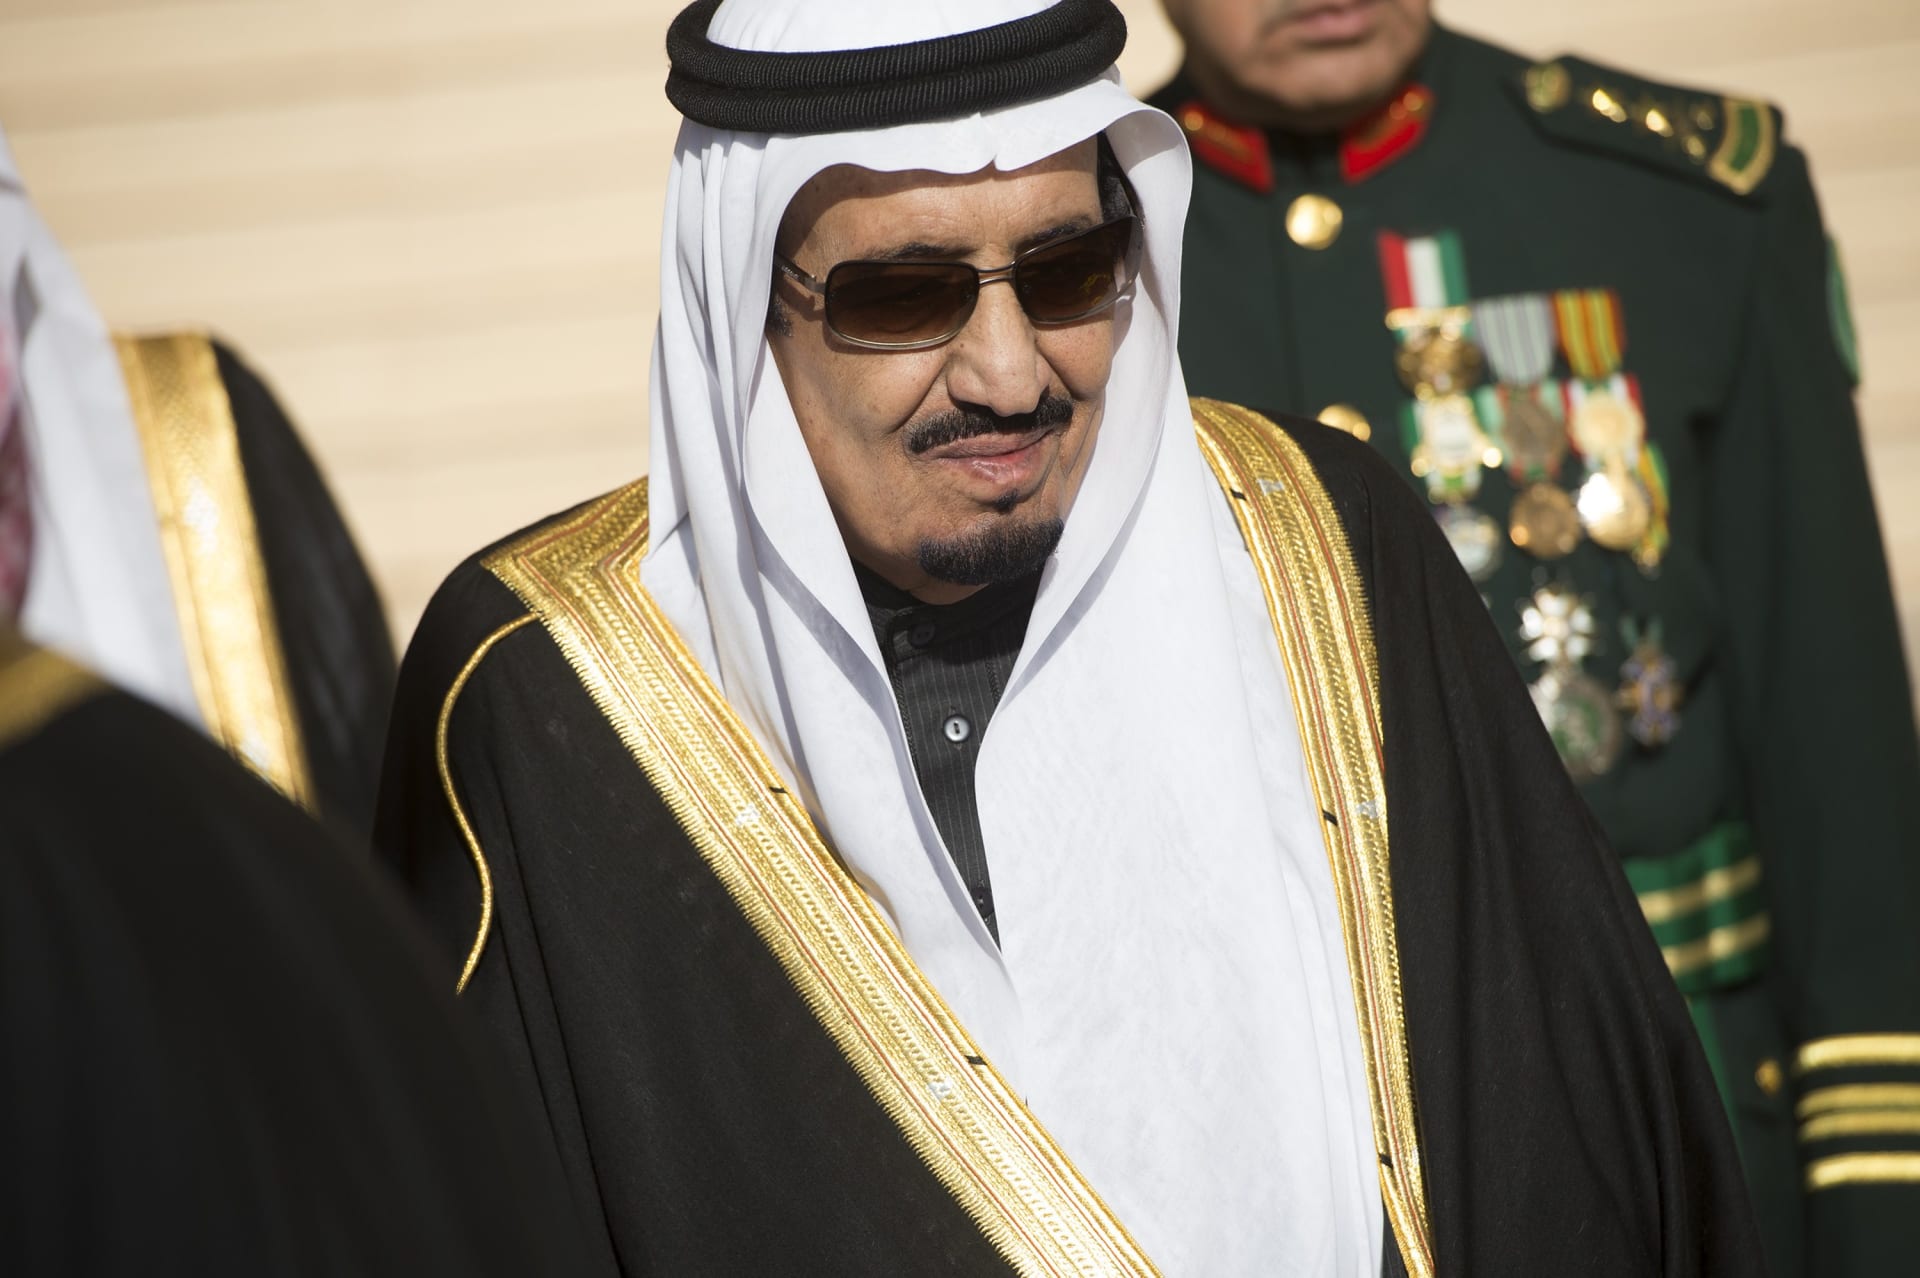 مجلس الوزراء السعودي يُقر "رؤية المملكة" لـ2030.. والملك سلمان: نأمل أن تكون نموذجا للعالم